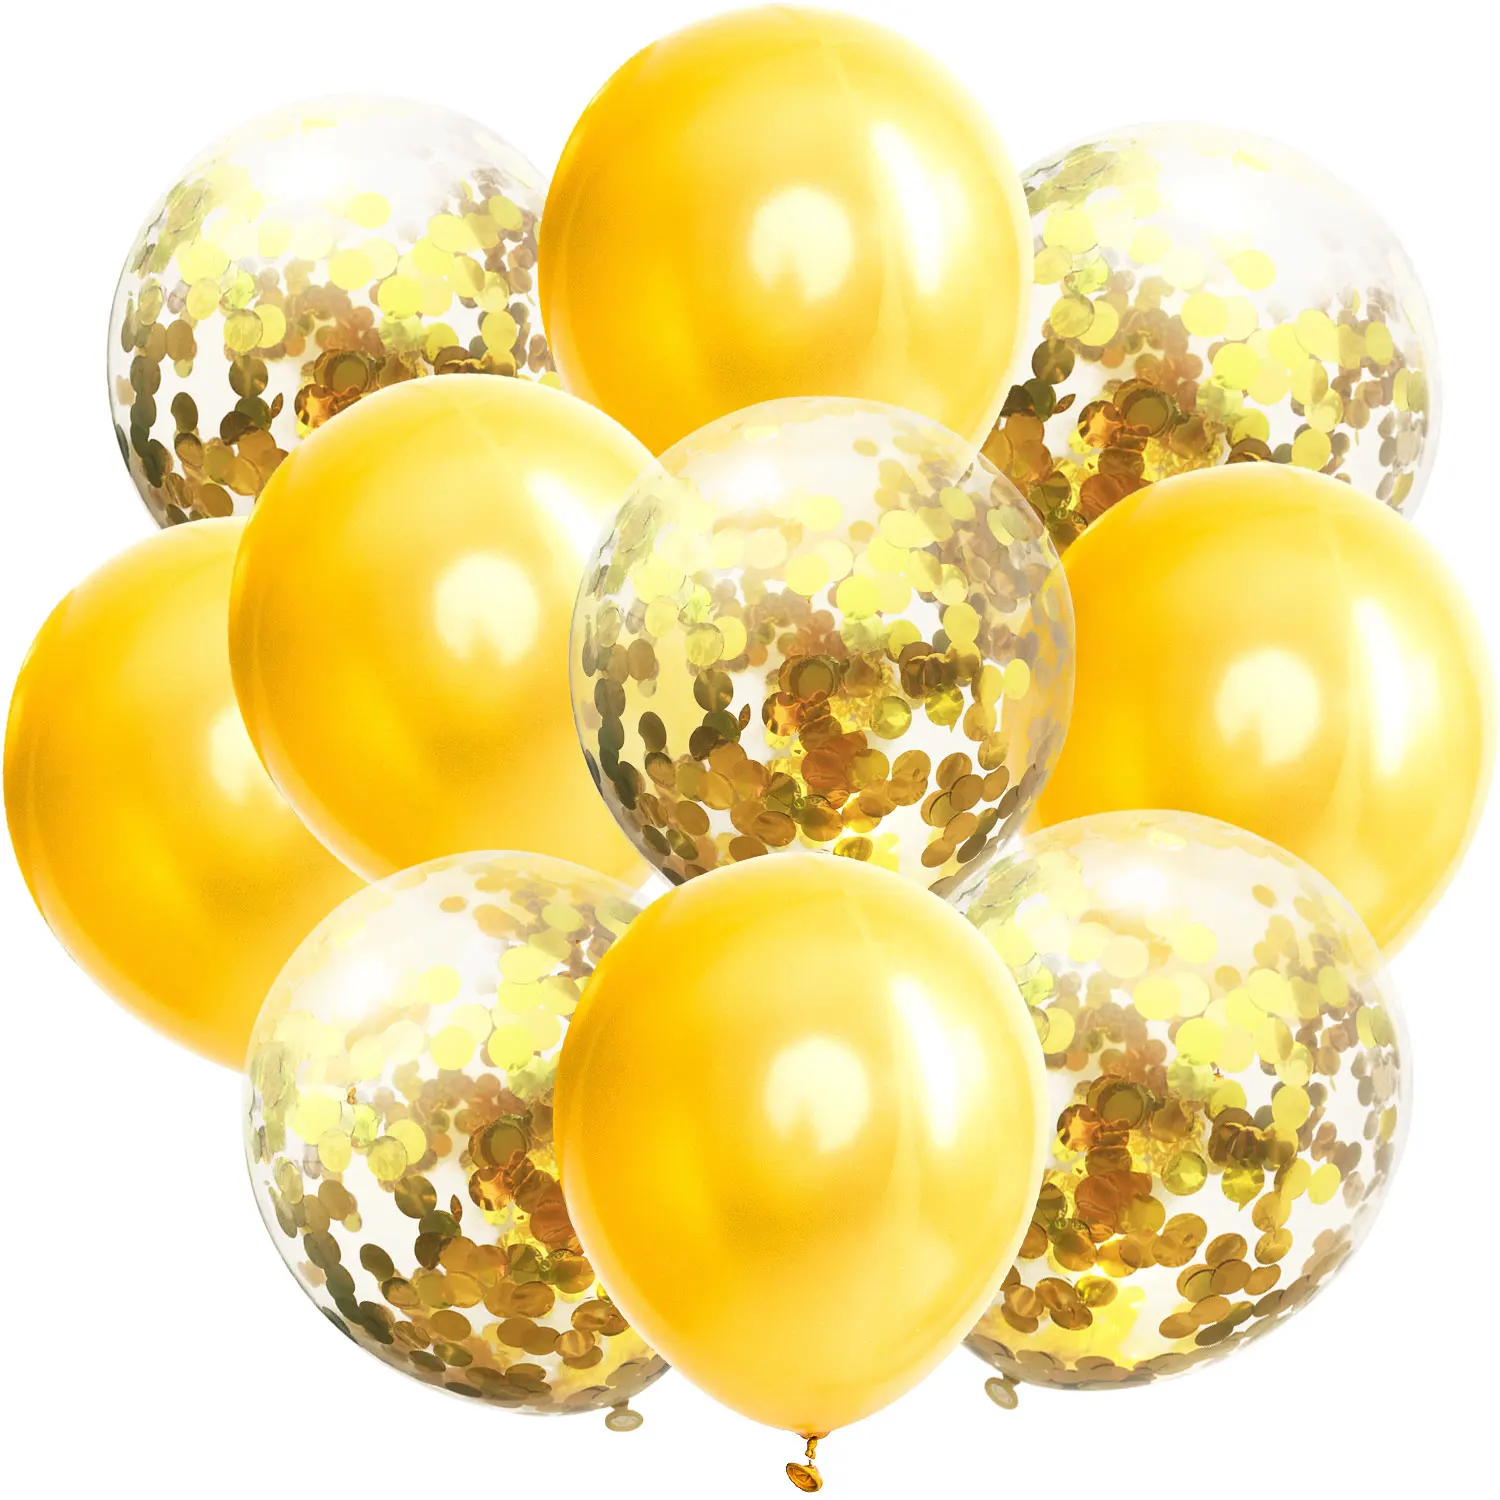 ZLJQ 10 шт. разноцветные конфетти воздушные шары на день рождения украшения для детей и взрослых металлический шар воздушный шар на день рождения прозрачный шар